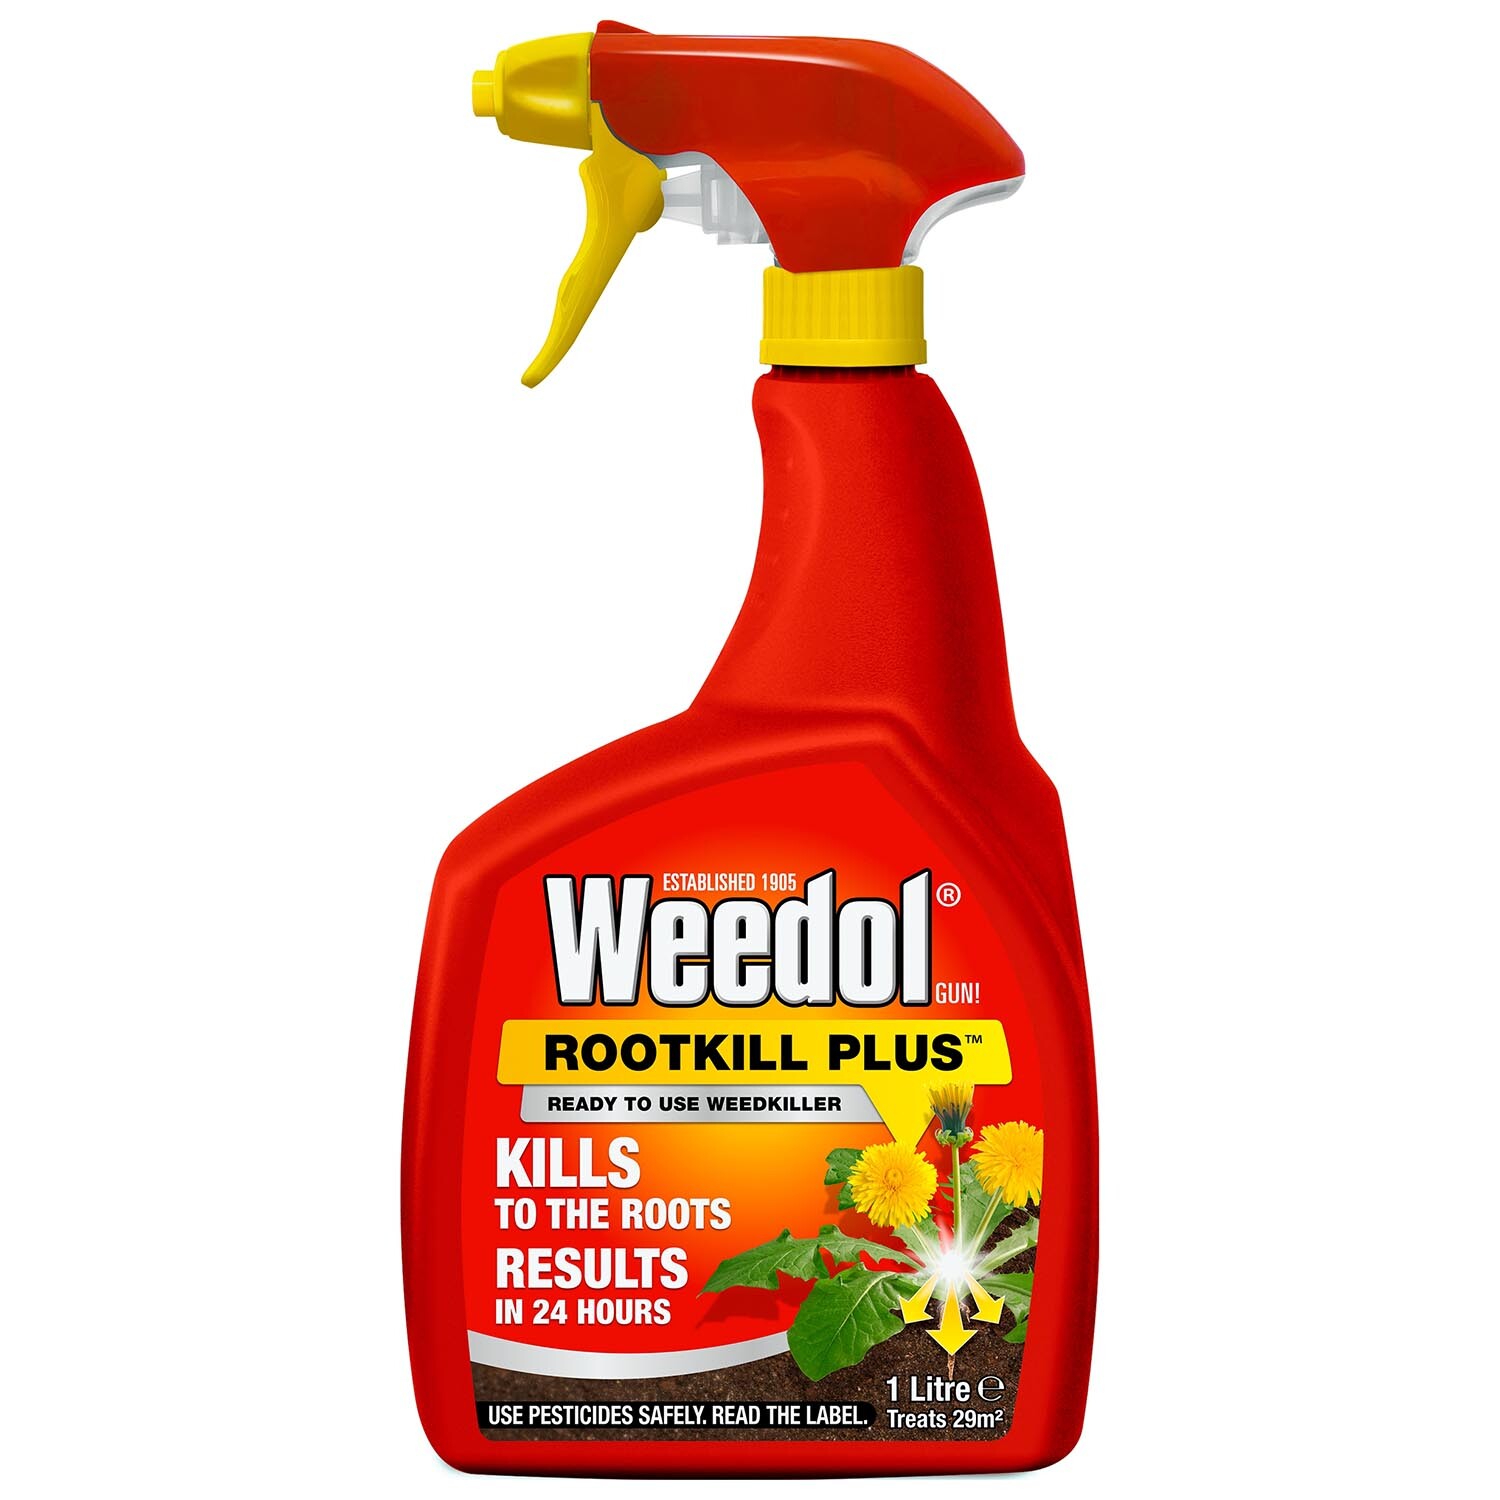 Weedol Rootkill Weed Killer Image 1